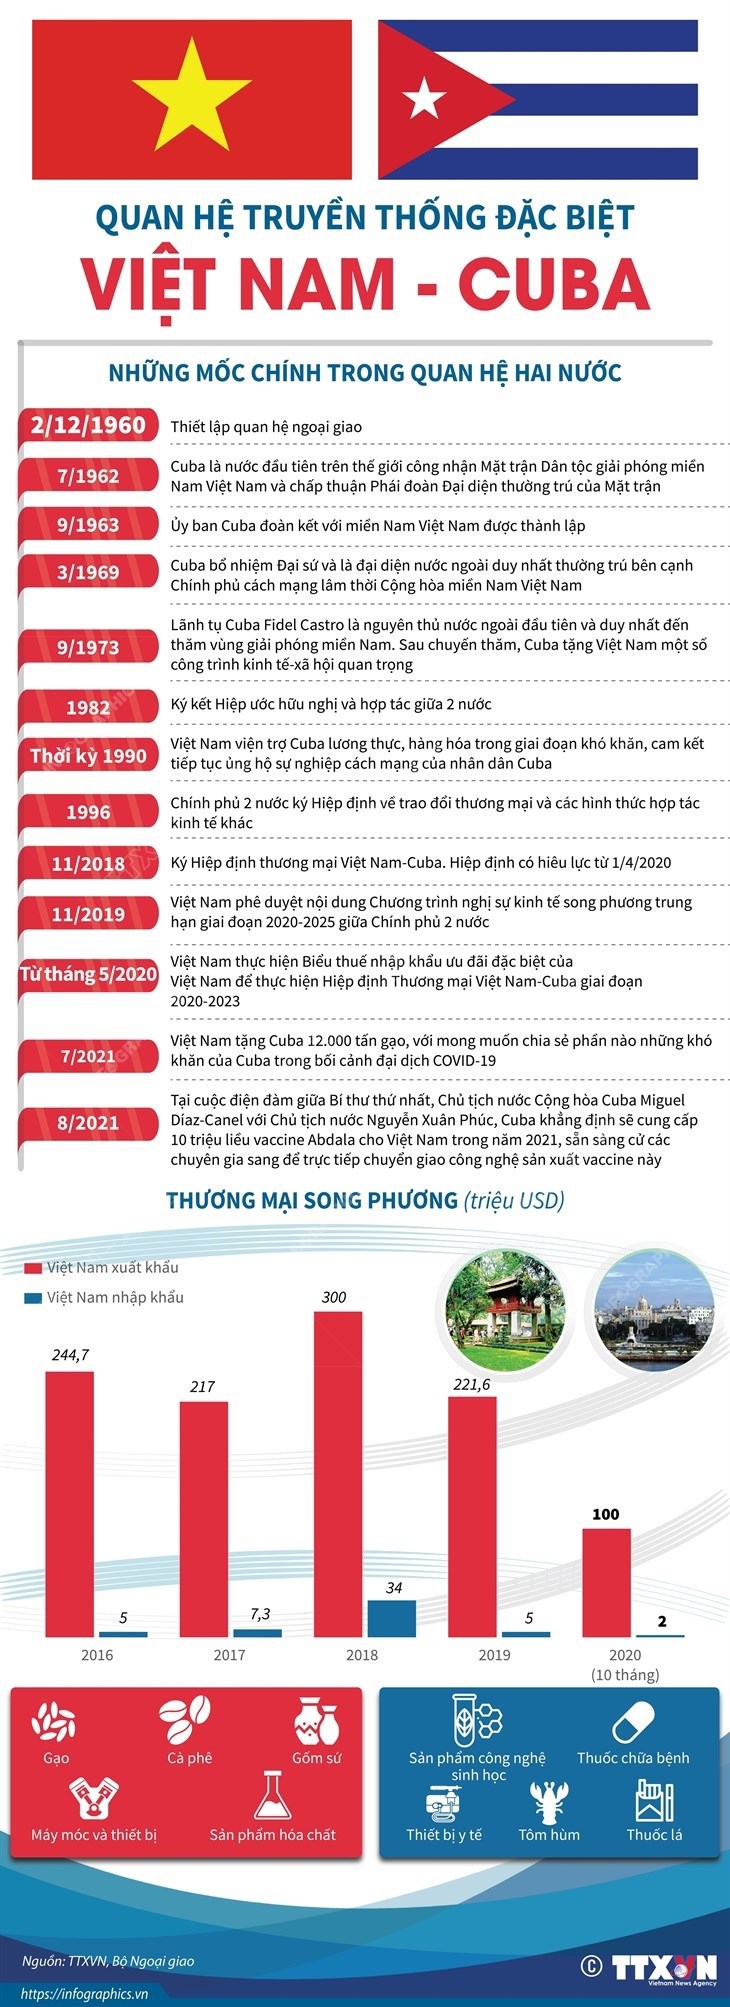 [Infographics] Quan hệ truyền thống đặc biệt Việt Nam - Cuba - Ảnh 1